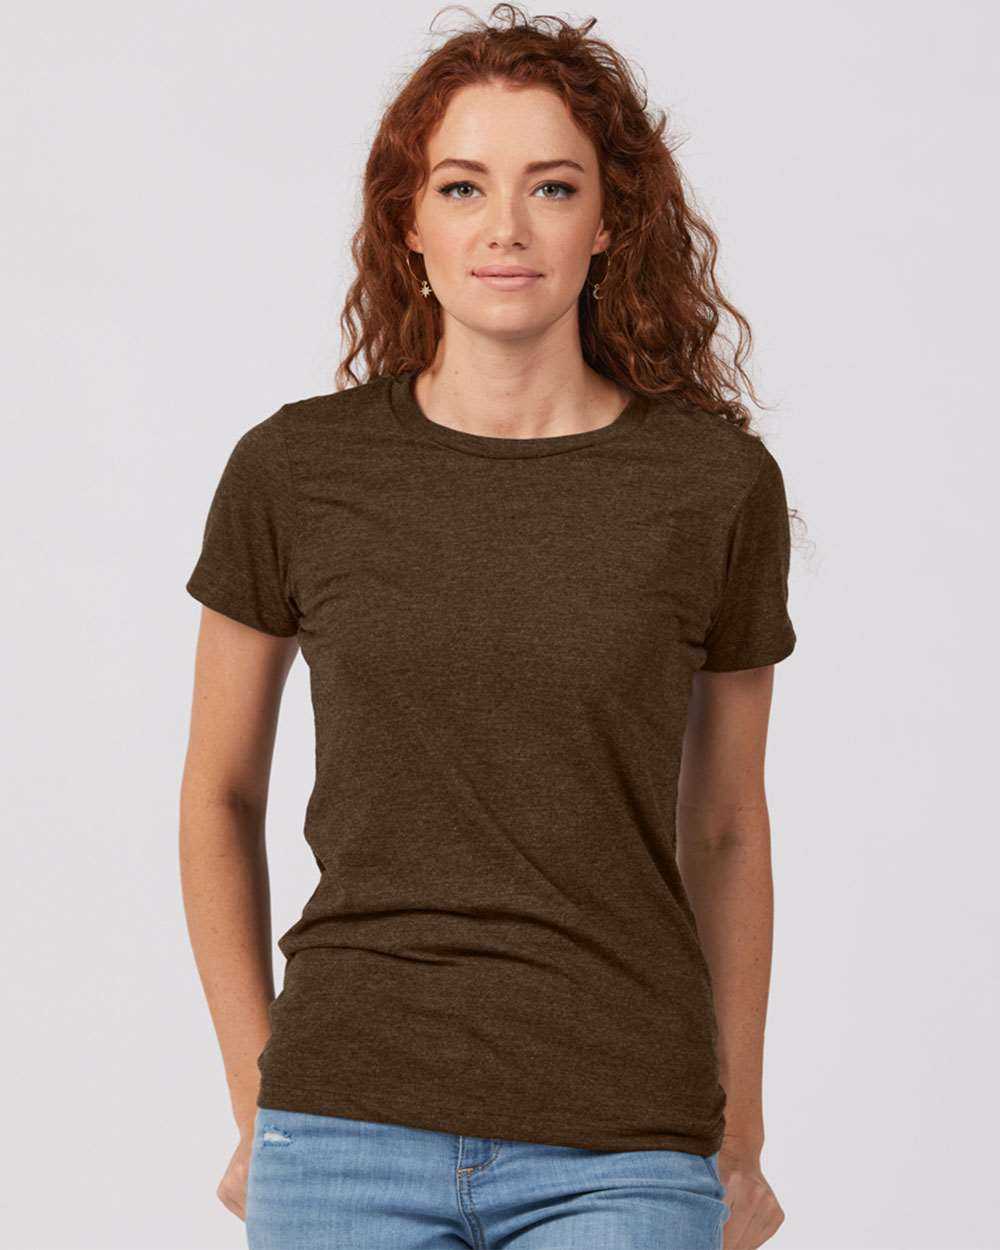 Tultex 542 Women's Premium Cotton Blend T-Shirt - Brown Heather - HIT a Double